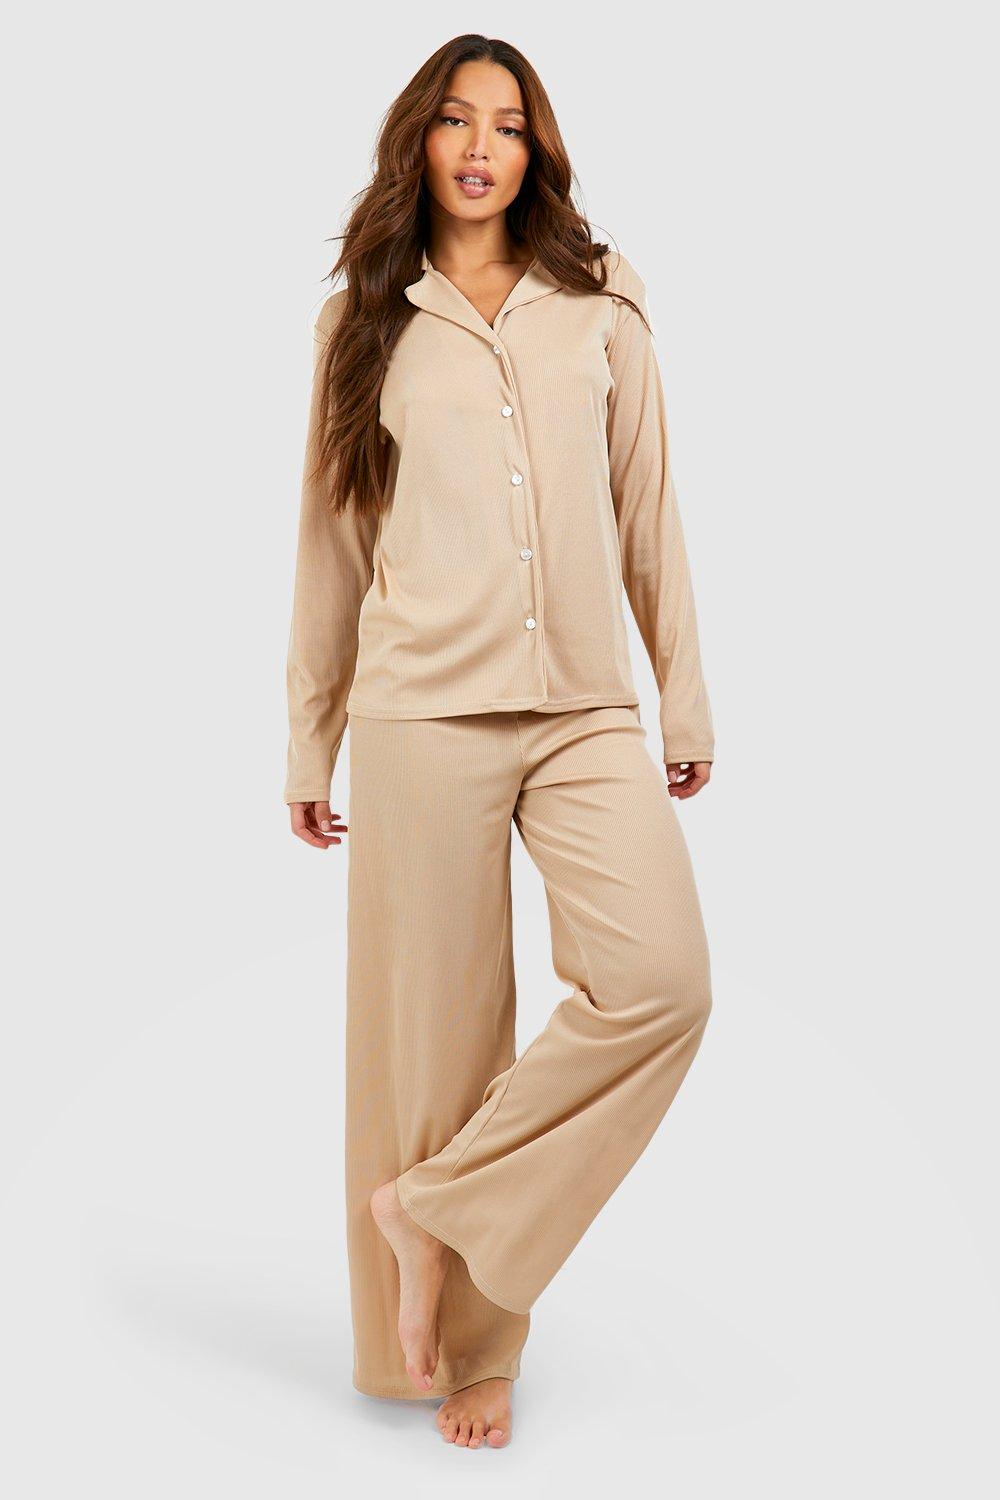 Boohoo Tall Pajamas Retailer